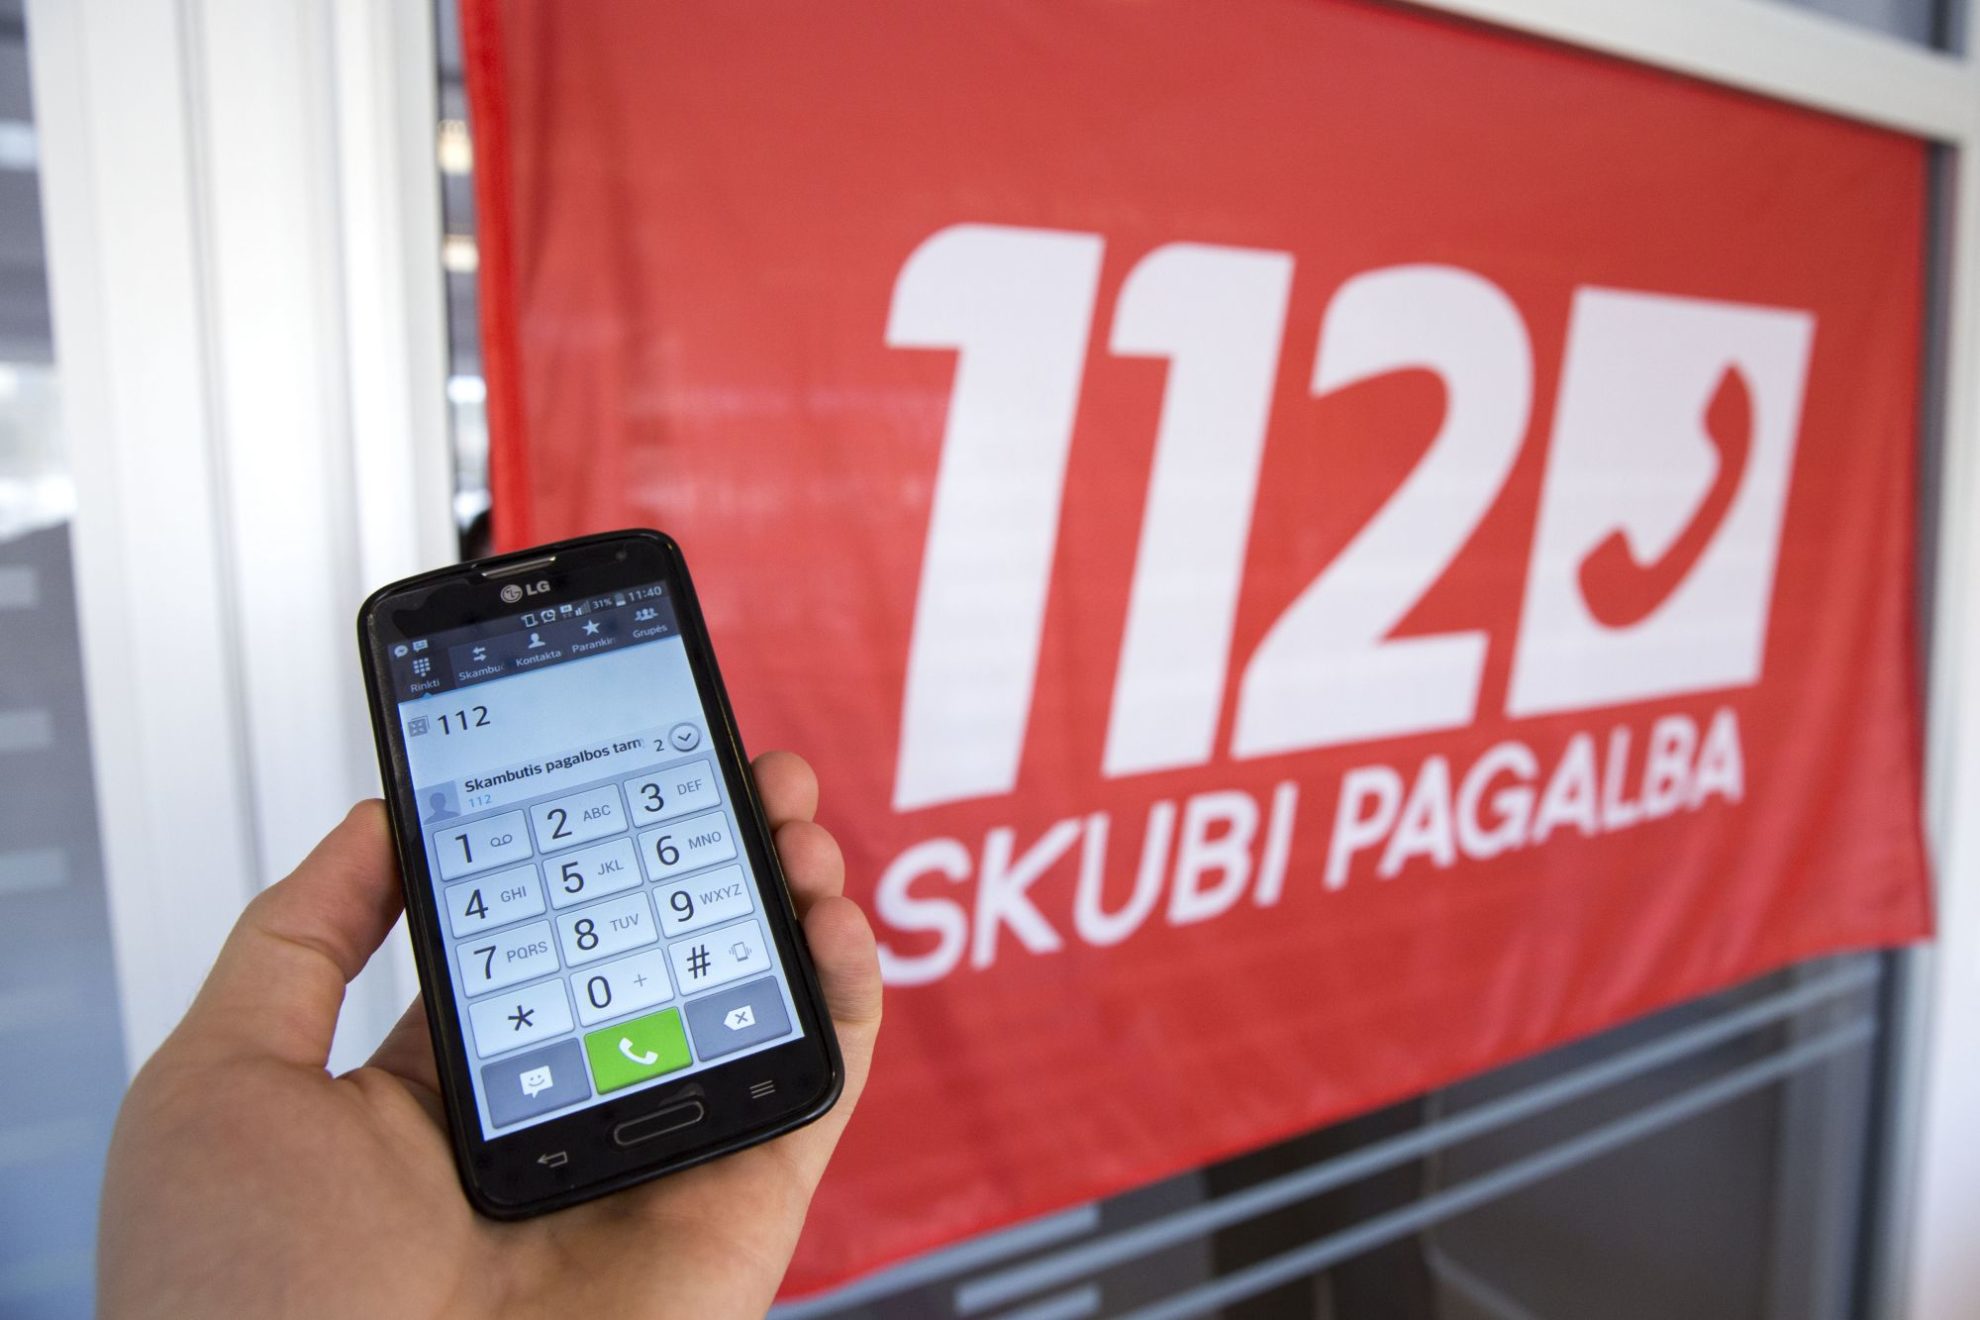 Nuo šių metų liepos 1 dienos keičiamas telefono numerio 112 pavadinimas – nuo šiol jis bus vadinamas skubiosios pagalbos tarnybų telefono numeriu 112.